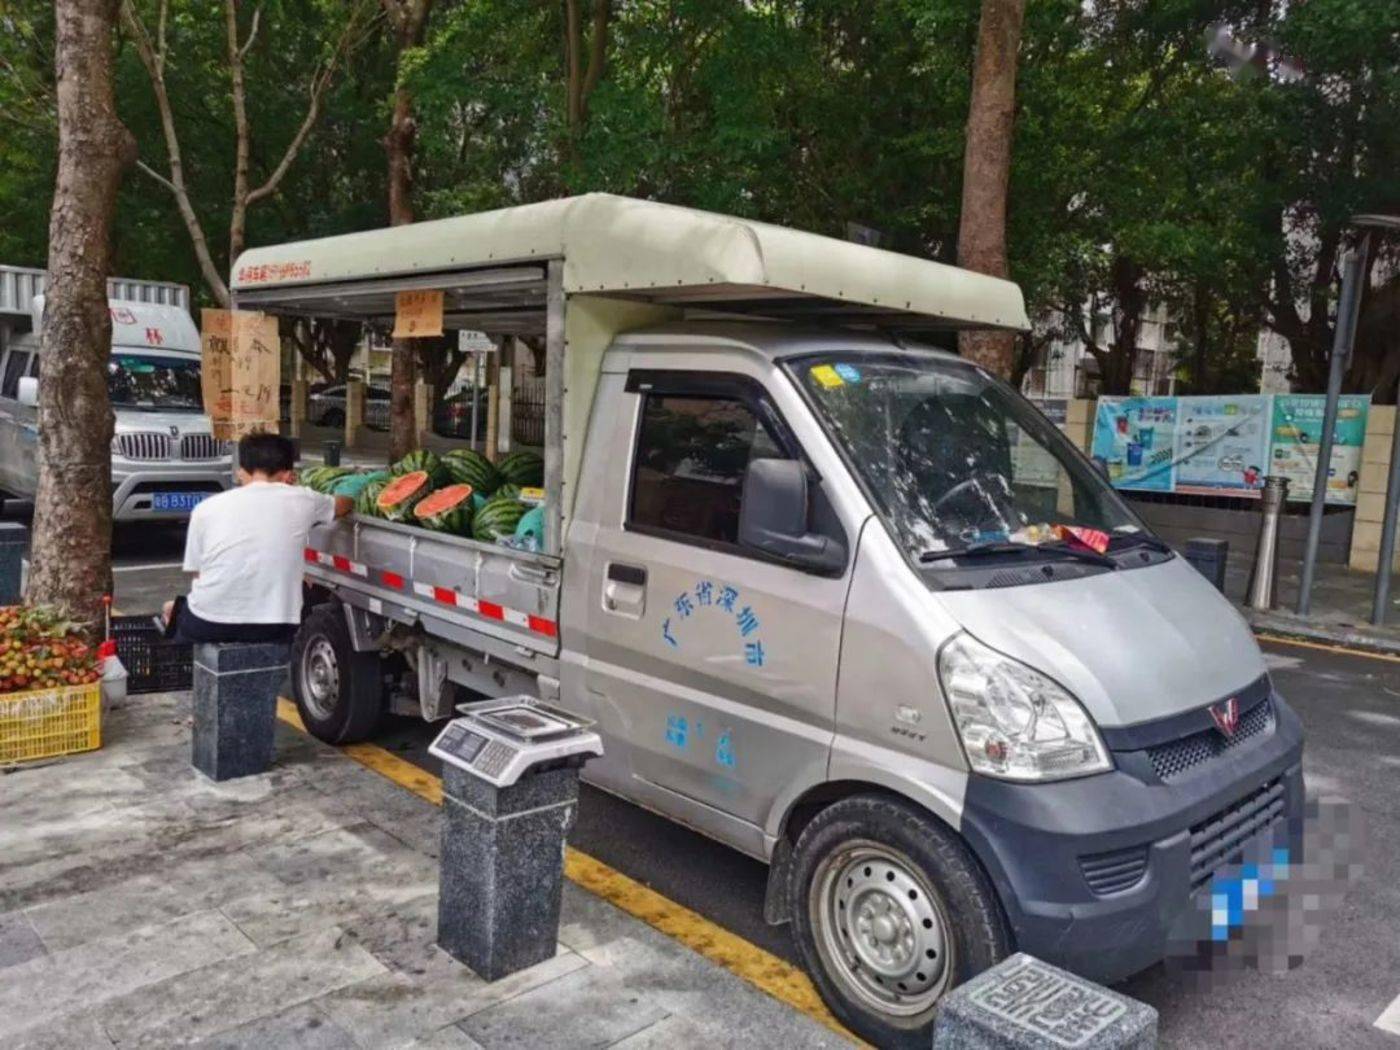 摄于深圳街头,一位用五菱货车摆摊的小贩 文丨砺石商业评论,作者丨